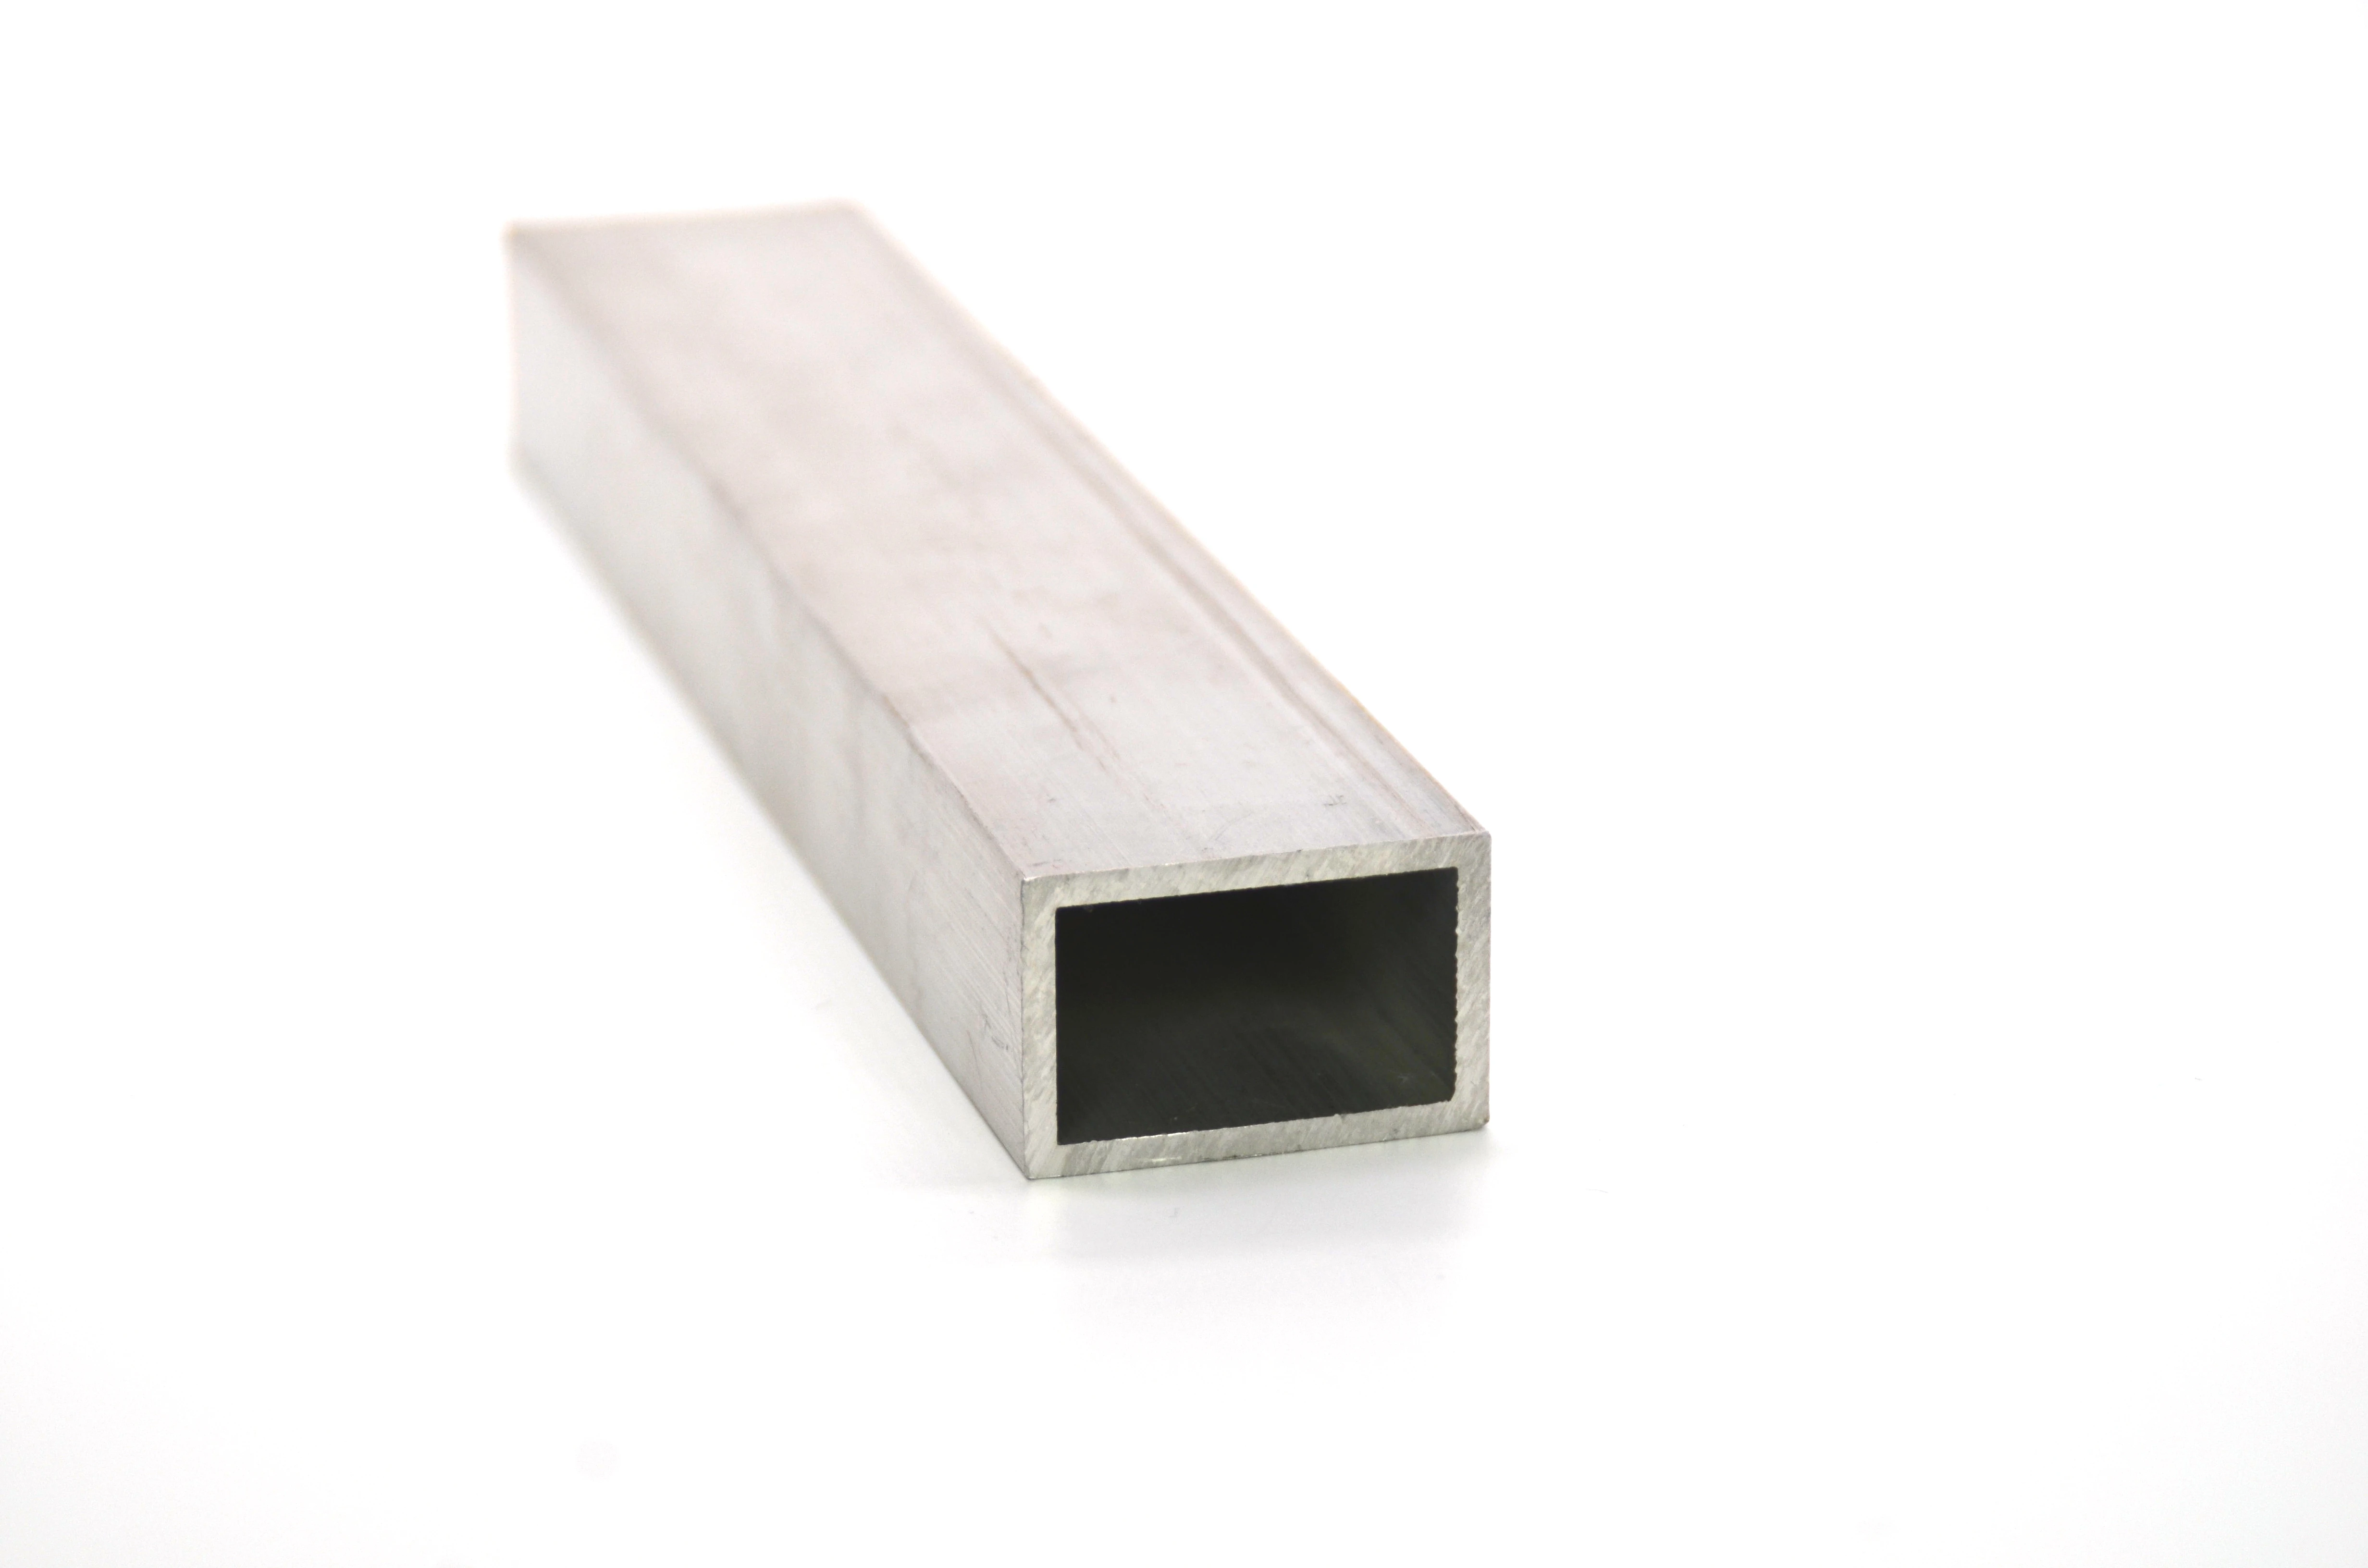 Anodized aluminium tube rectangular tubing square pipe/aluminum square tube